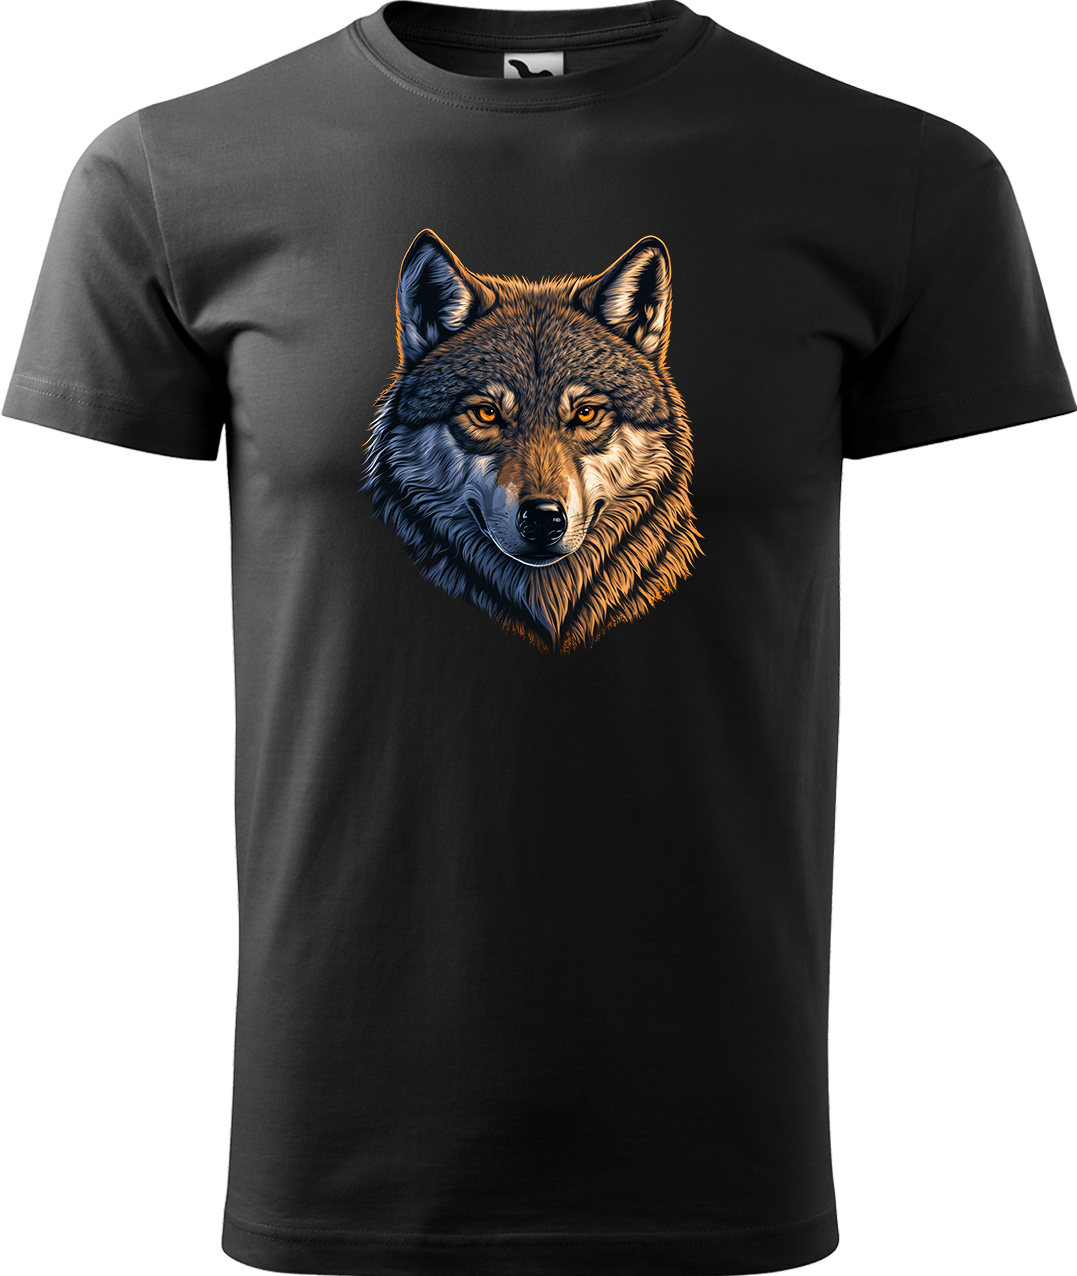 Pánské tričko s vlkem - Hlava vlka Velikost: S, Barva: Černá (01), Střih: pánský